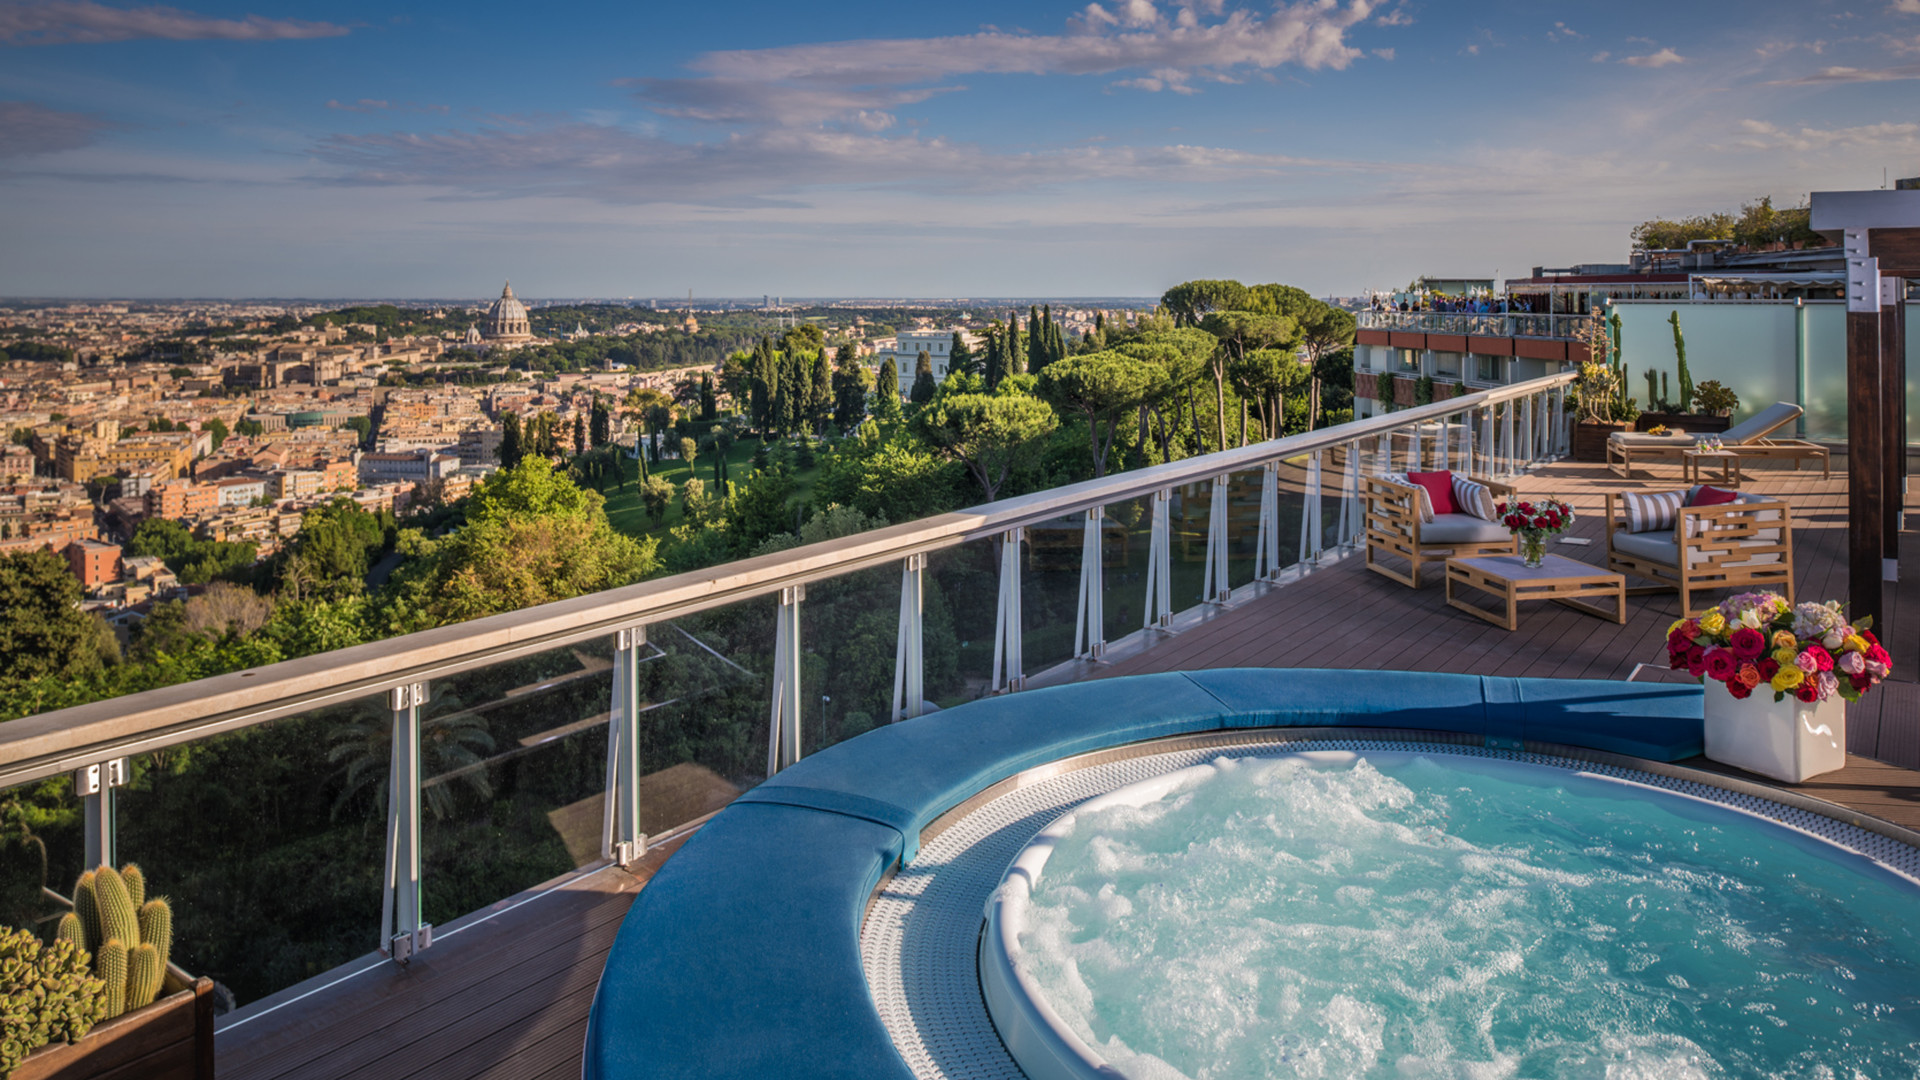 Penthouse Suite Rooftop Terrace hot tub